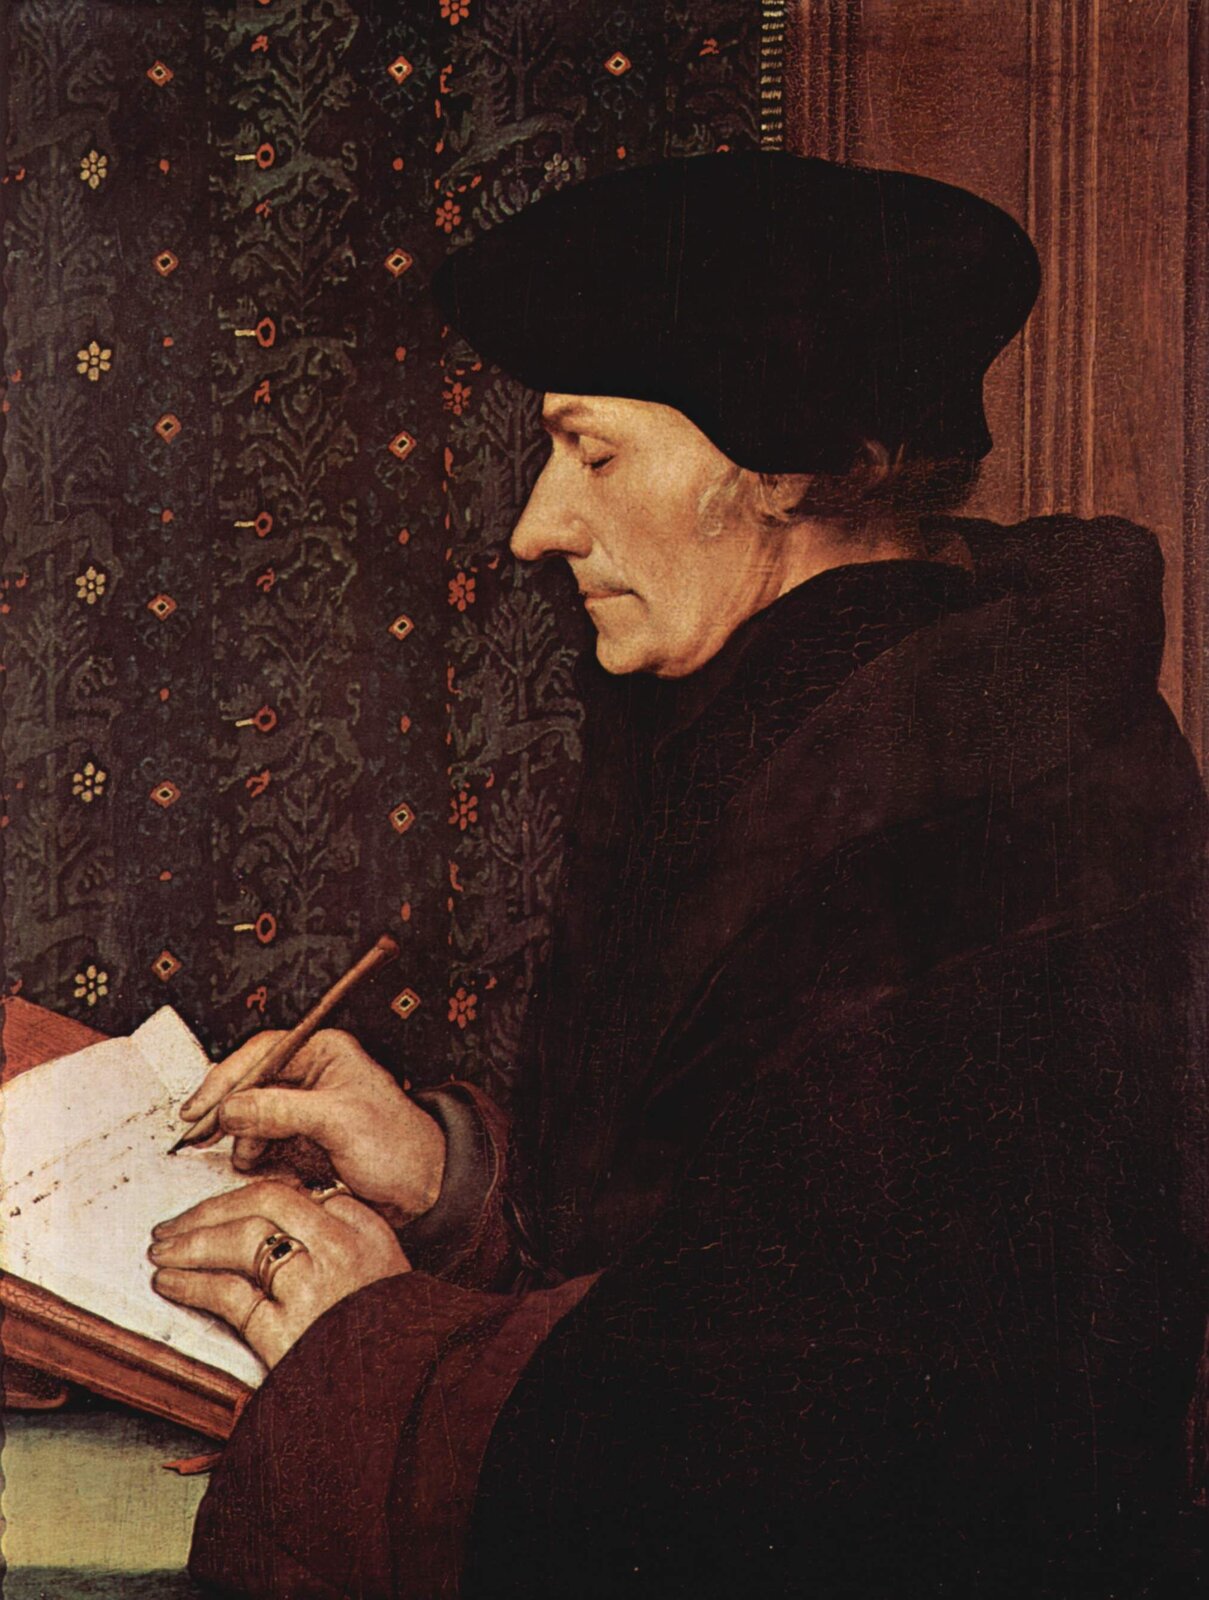 Obraz autorstwa Hansa Holbeina pt. portret Erazma z Rotterdamu przedstawia tytułowego mężczyznę, który pozuje na siedząco. Został on uwieczniony w czasie pracy nad dokumentem.  Mężczyzna ma na głowie czarną czapkę, ubrany jest w długą czarną szatę, w jednej dłoni trzyma pióro, drugą przytrzymuje kartkę papieru. 